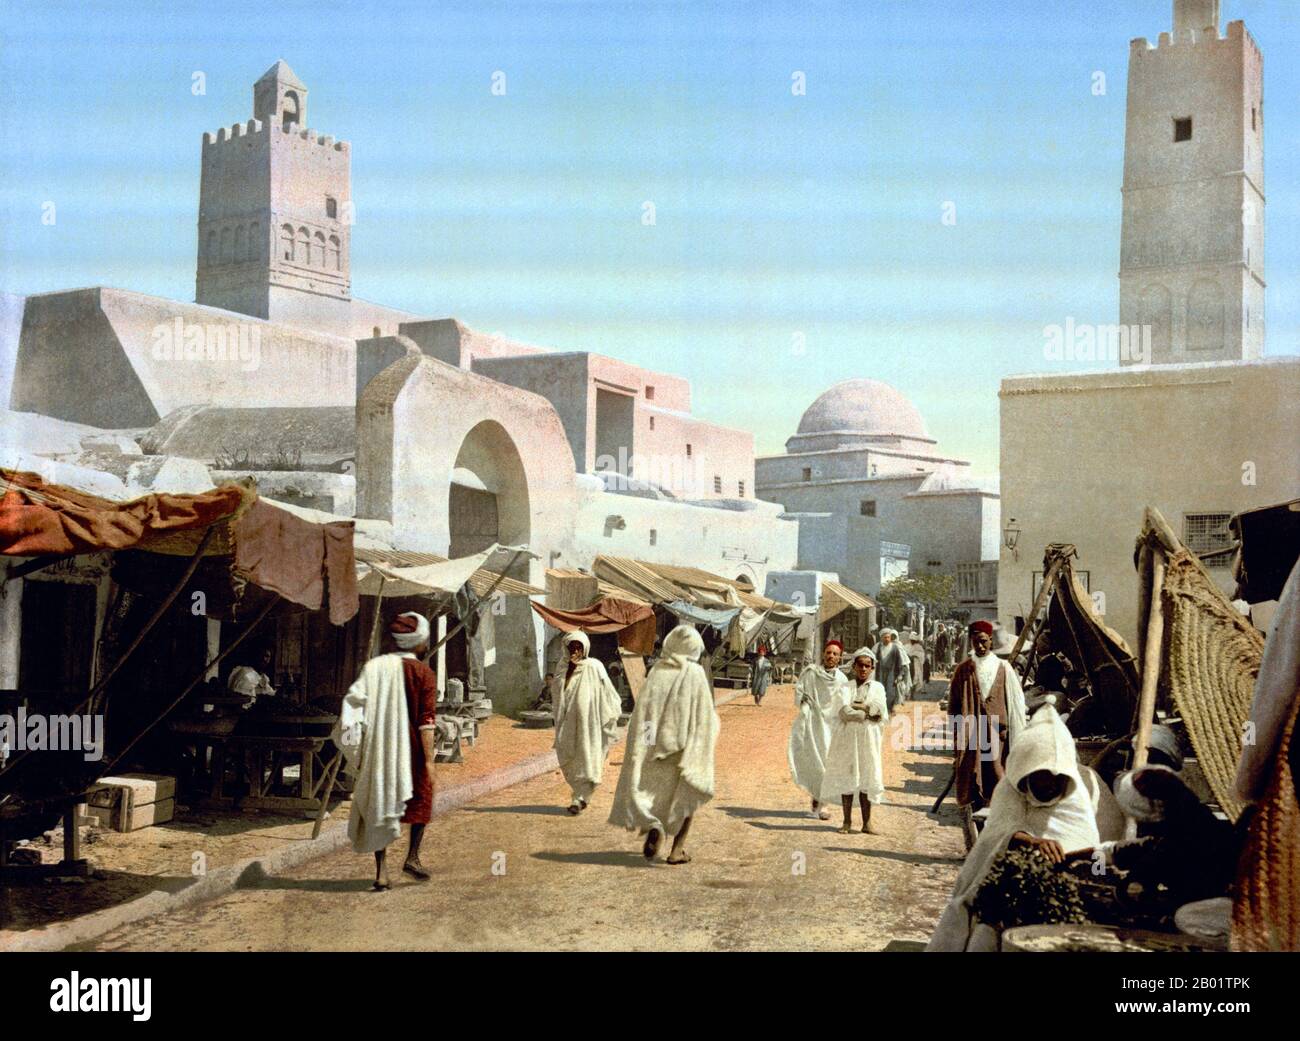 Tunisie : rue principale et mosquée à Qairawan/Kairouan, 1899. Kairouan (Al Qairawān), également connu sous le nom de Kirwan ou al-Qayrawan, est la capitale du gouvernorat de Kairouan en Tunisie. Appelée capitale culturelle islamique, elle est classée au patrimoine mondial de l'UNESCO. La ville a été fondée par les Arabes vers 670. À l'époque du calife Mu'awiya (R. 661-680), il est devenu un centre important pour l'apprentissage islamique et coranique, attirant ainsi un grand nombre de musulmans de diverses parties du monde, à côté seulement de la Mecque et Médine. La sainte mosquée d'Uqba est située dans la ville. Banque D'Images